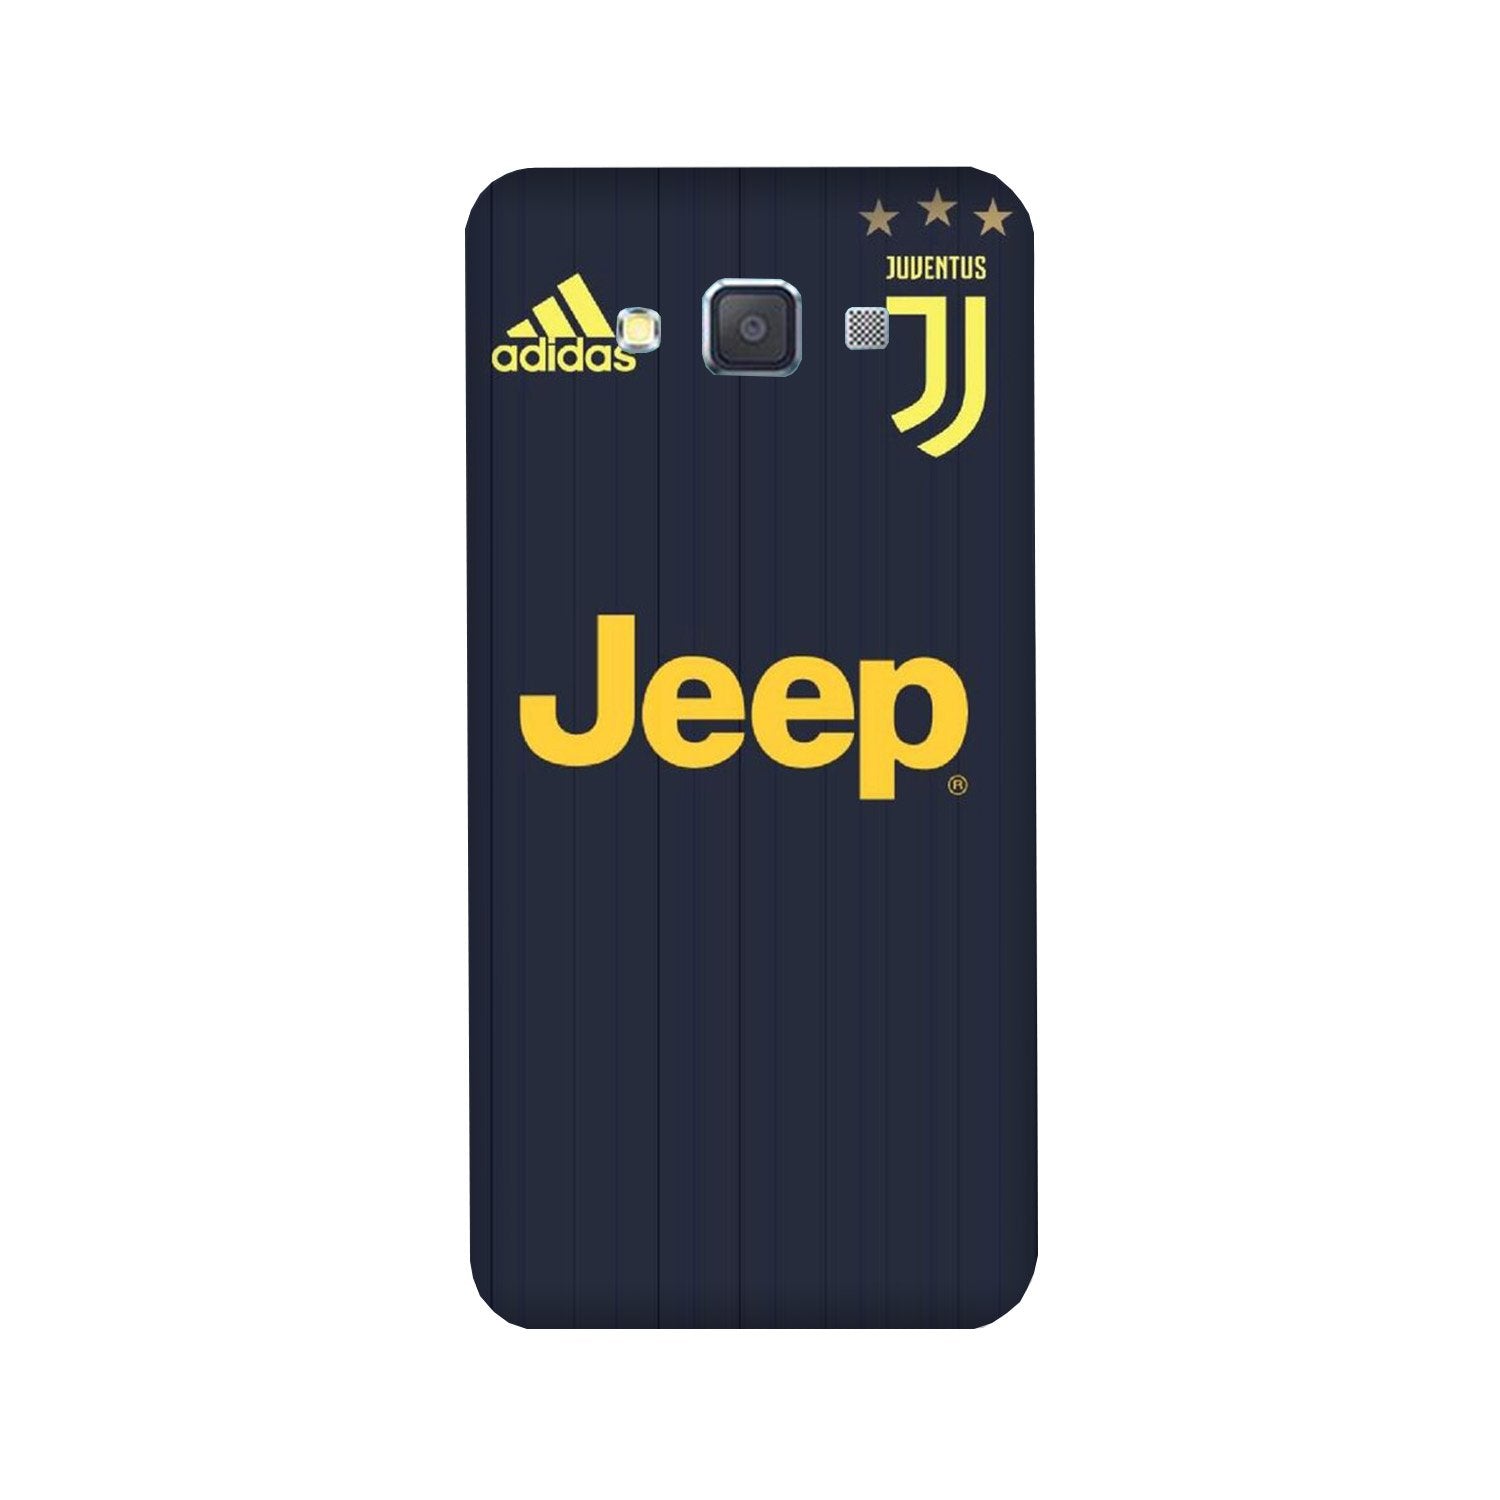 Jeep Juventus Case for Galaxy E5(Design - 161)